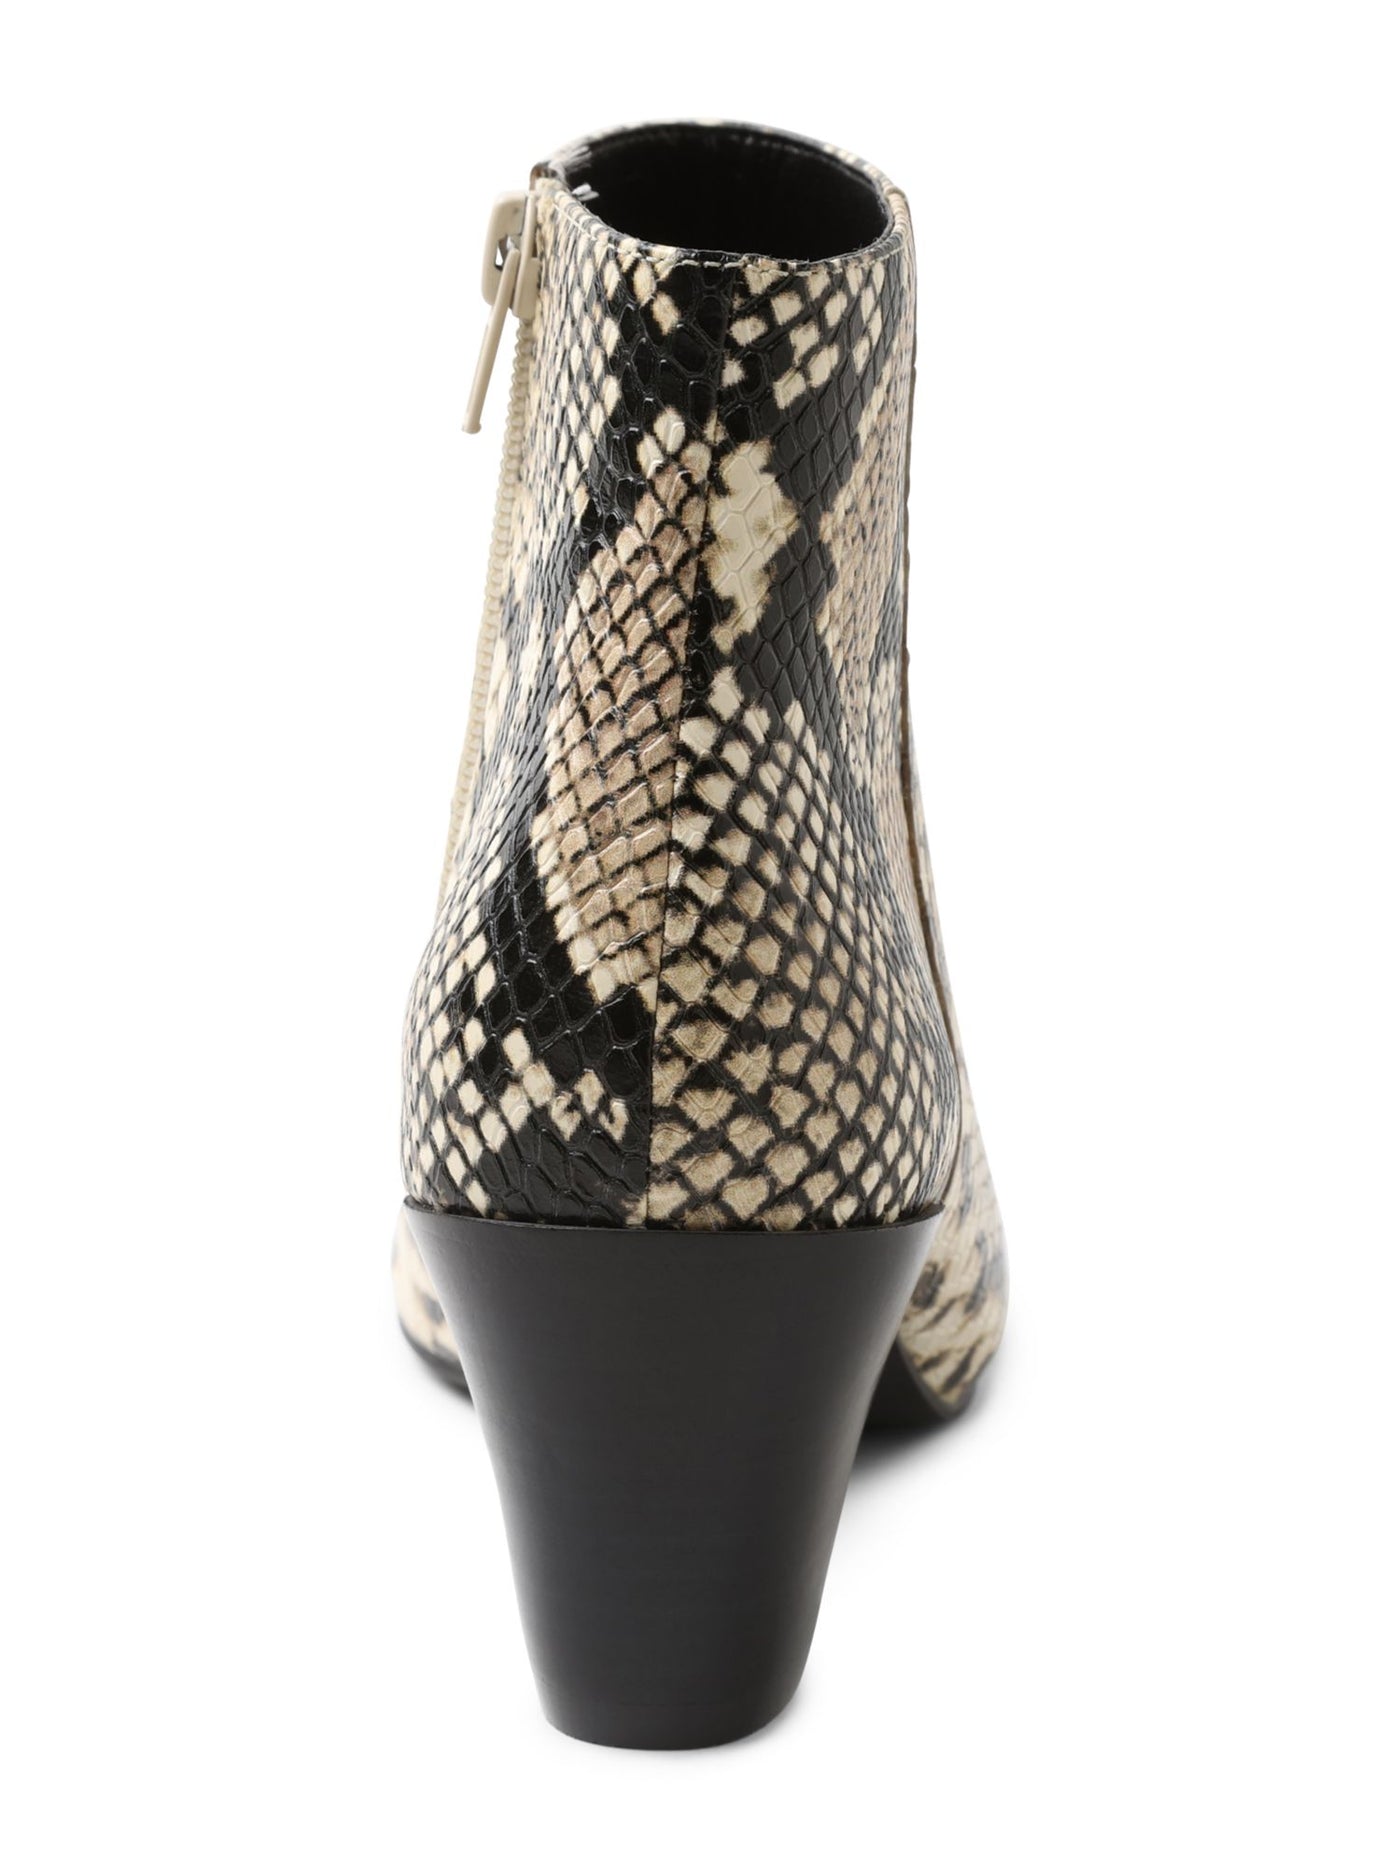 KENSIE Womens Beige Snake Print Angled Heel Comfort Leticia Pointed Toe Stacked Heel Zip-Up Leather Booties M